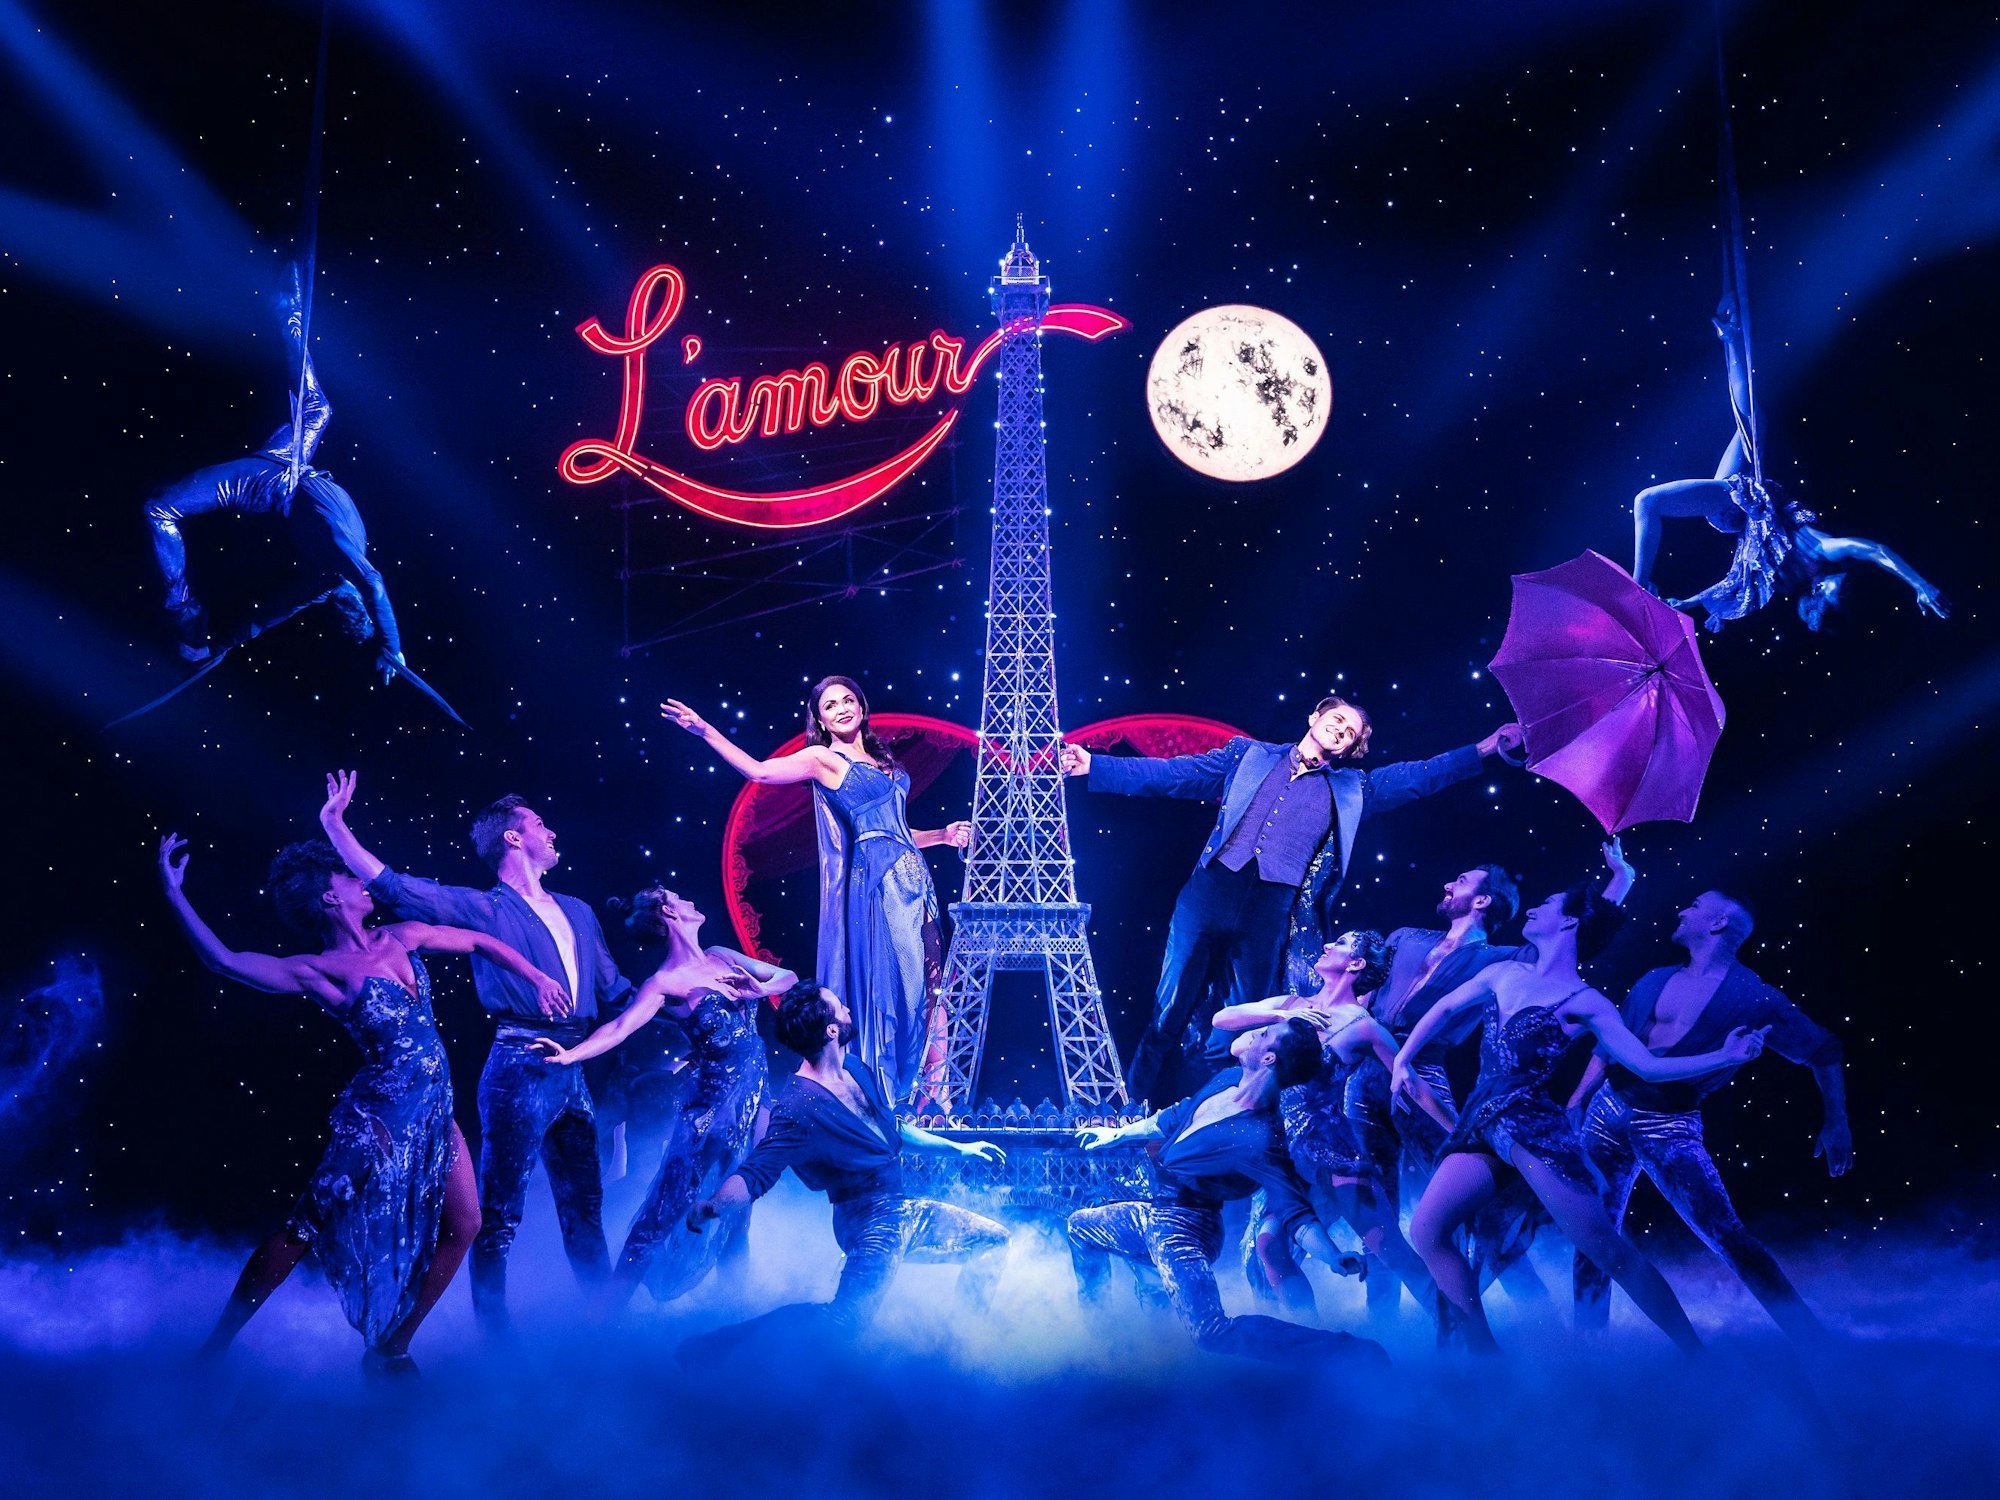 Liebe, das zentrale Thema von „Moulin Rouge“, wird stets besungen, aber auch illuminiert